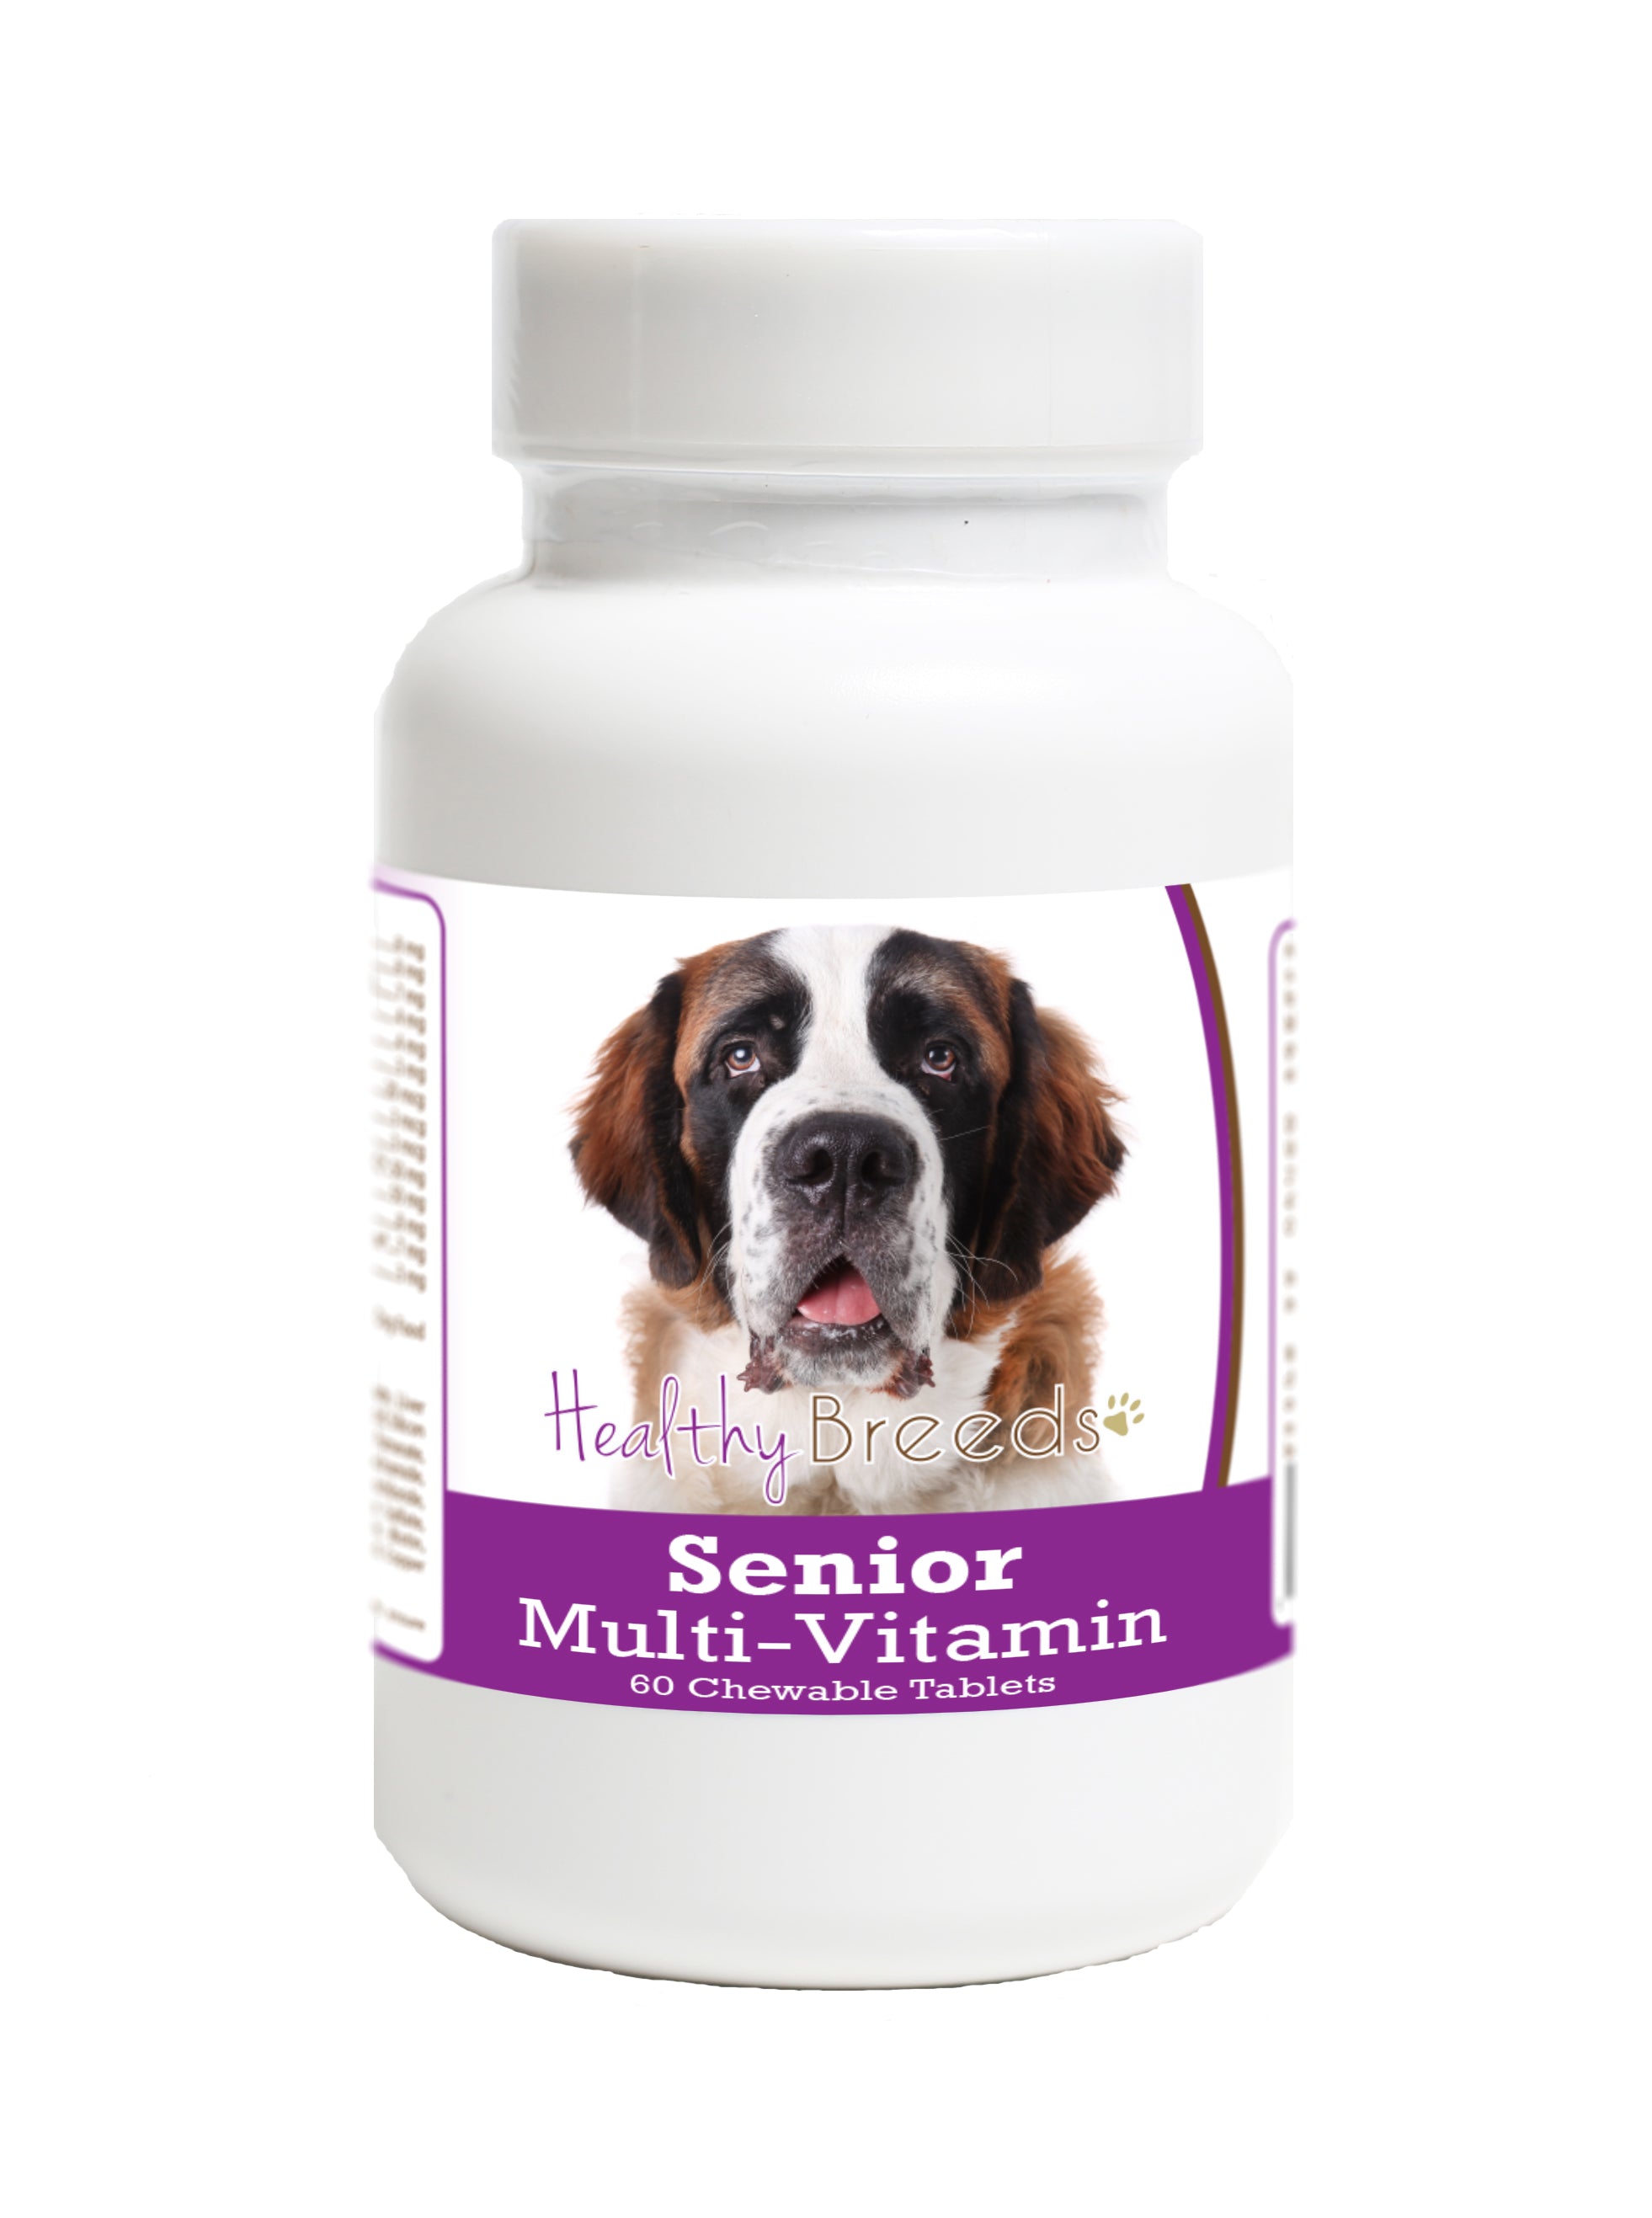 Saint Bernard Senior Dog Multivitamin Tablets 60 Count